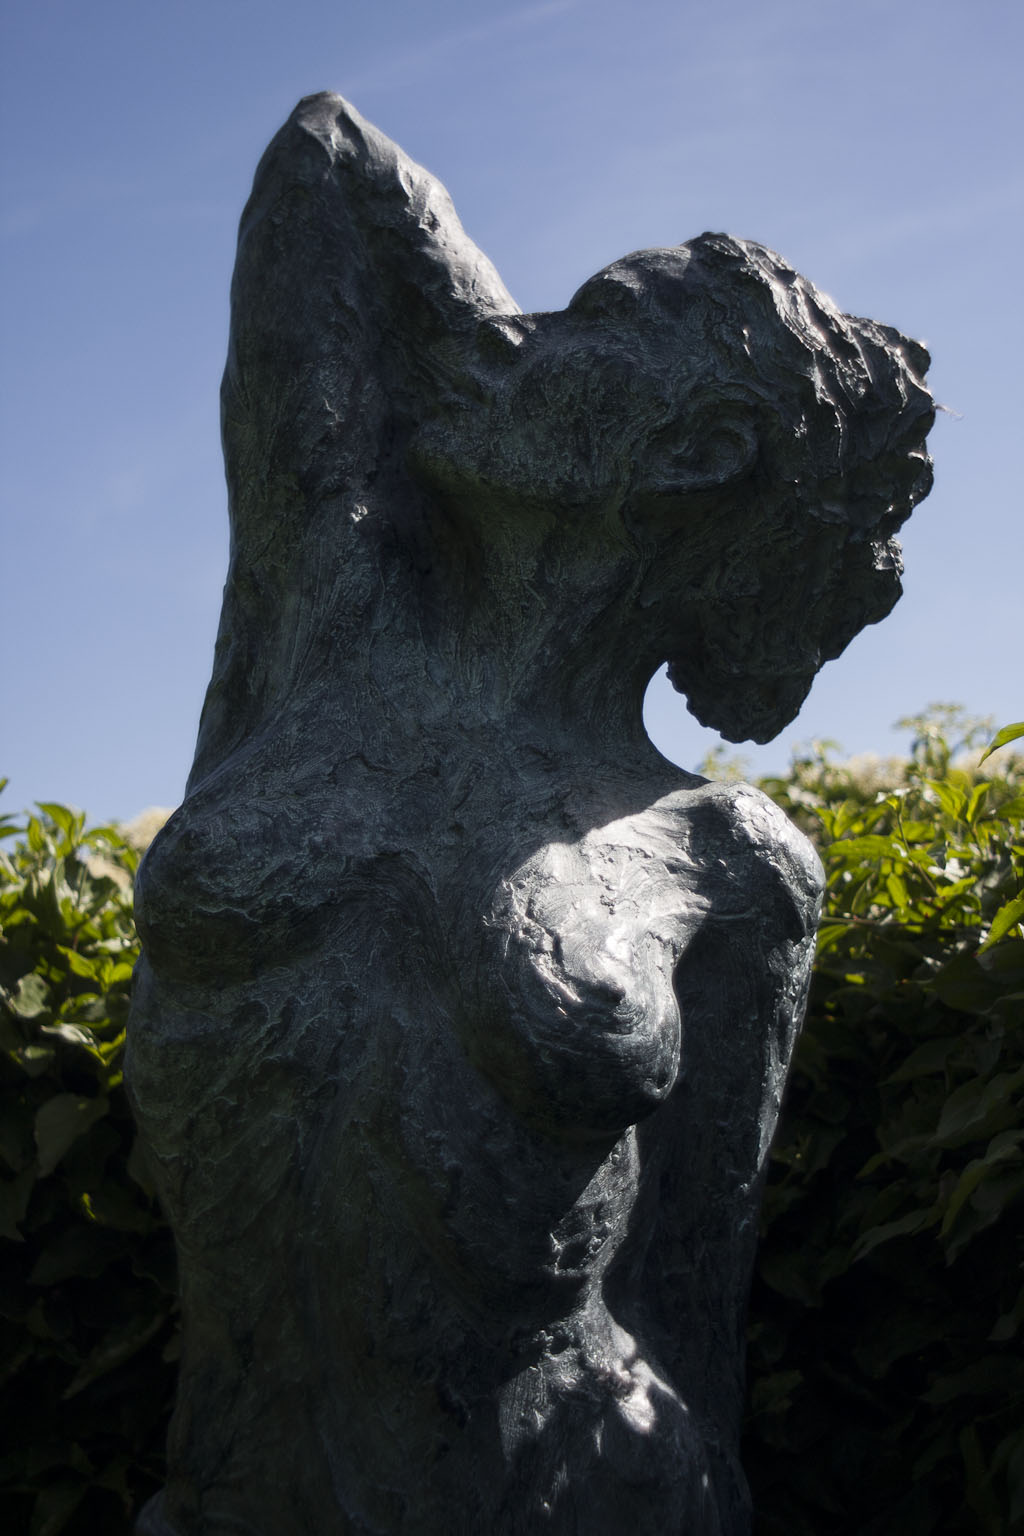 Printemps - Le Labyrinthe des sculptures - Pépinières Lappen - sculptures par Jean-Marc De Pas - Jardins Jardin 2015 aux Tuileries - Paris